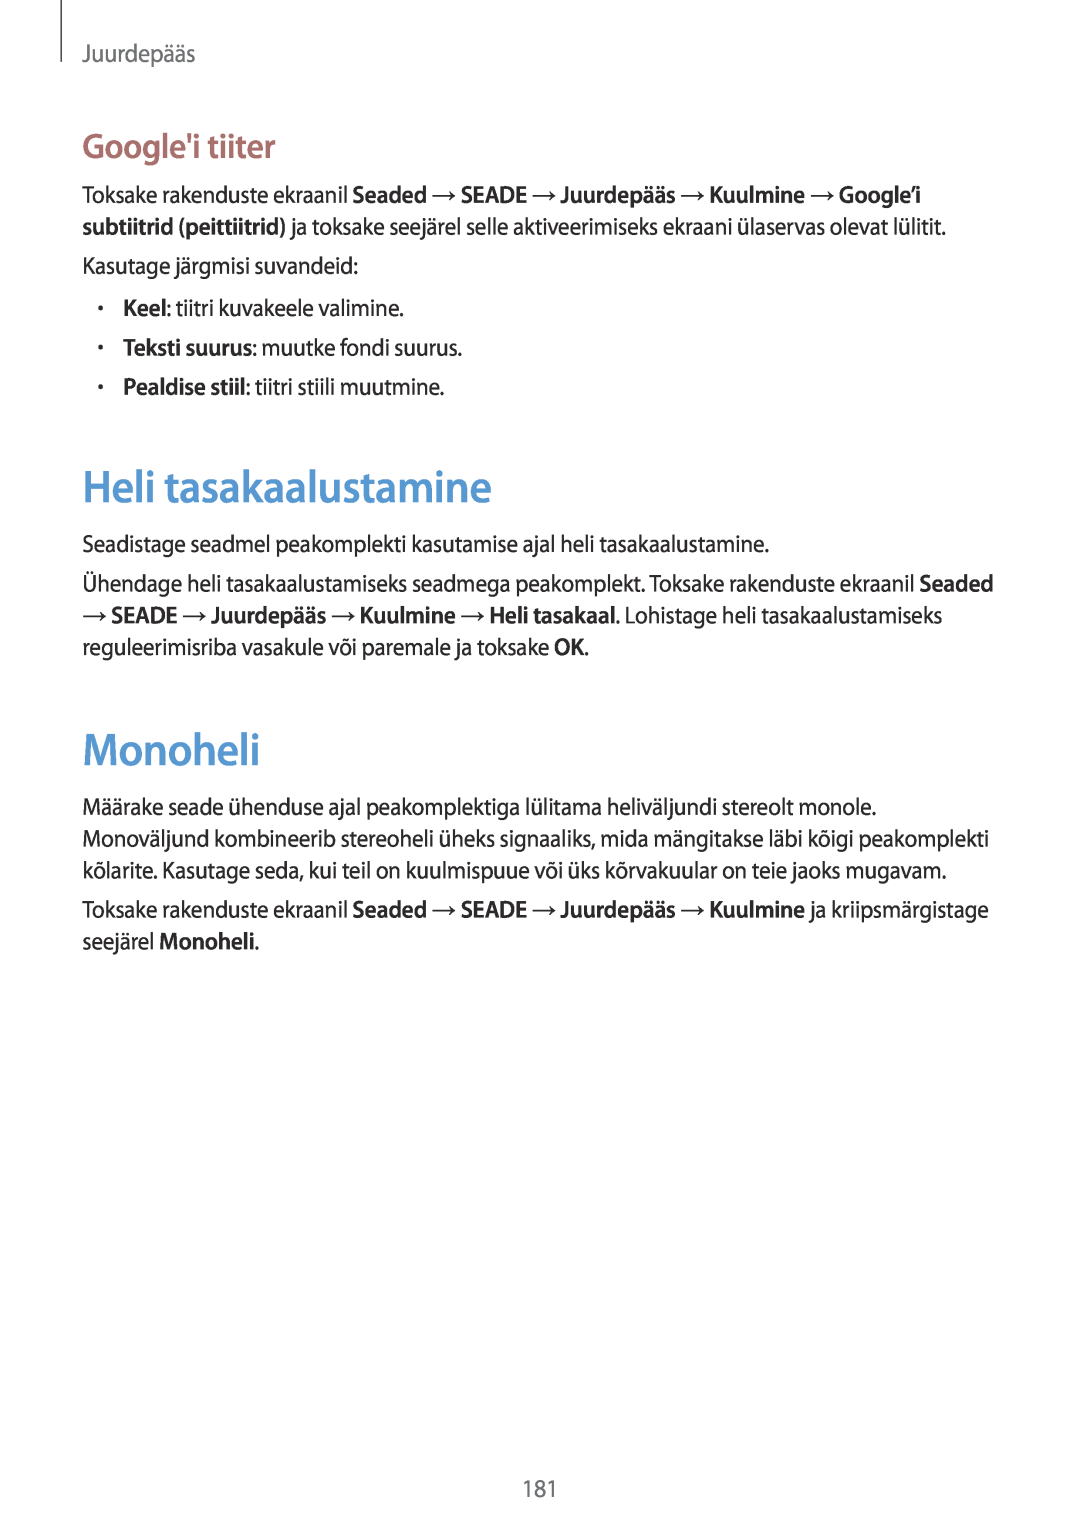 Samsung SM-T700NTSASEB, SM-T700NZWASEB manual Heli tasakaalustamine, Monoheli, Googlei tiiter, Juurdepääs 